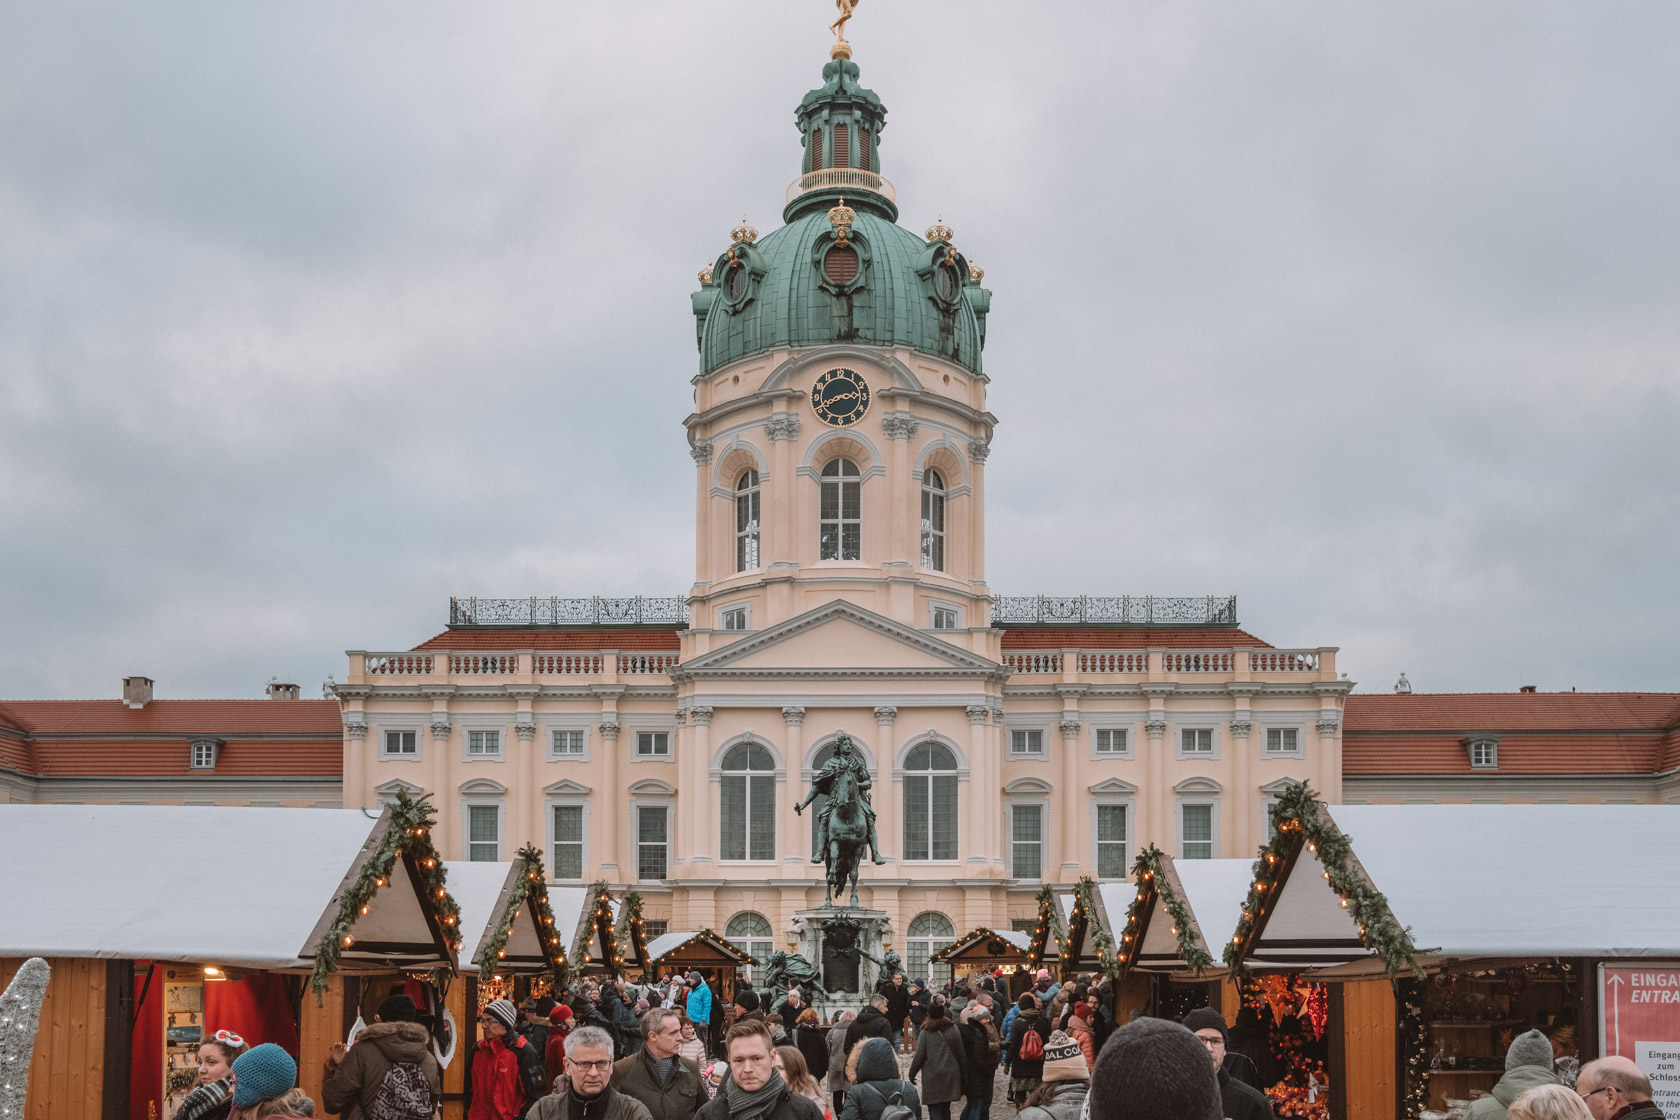 Christmas Market at Charlottenburg Palace, Berlin